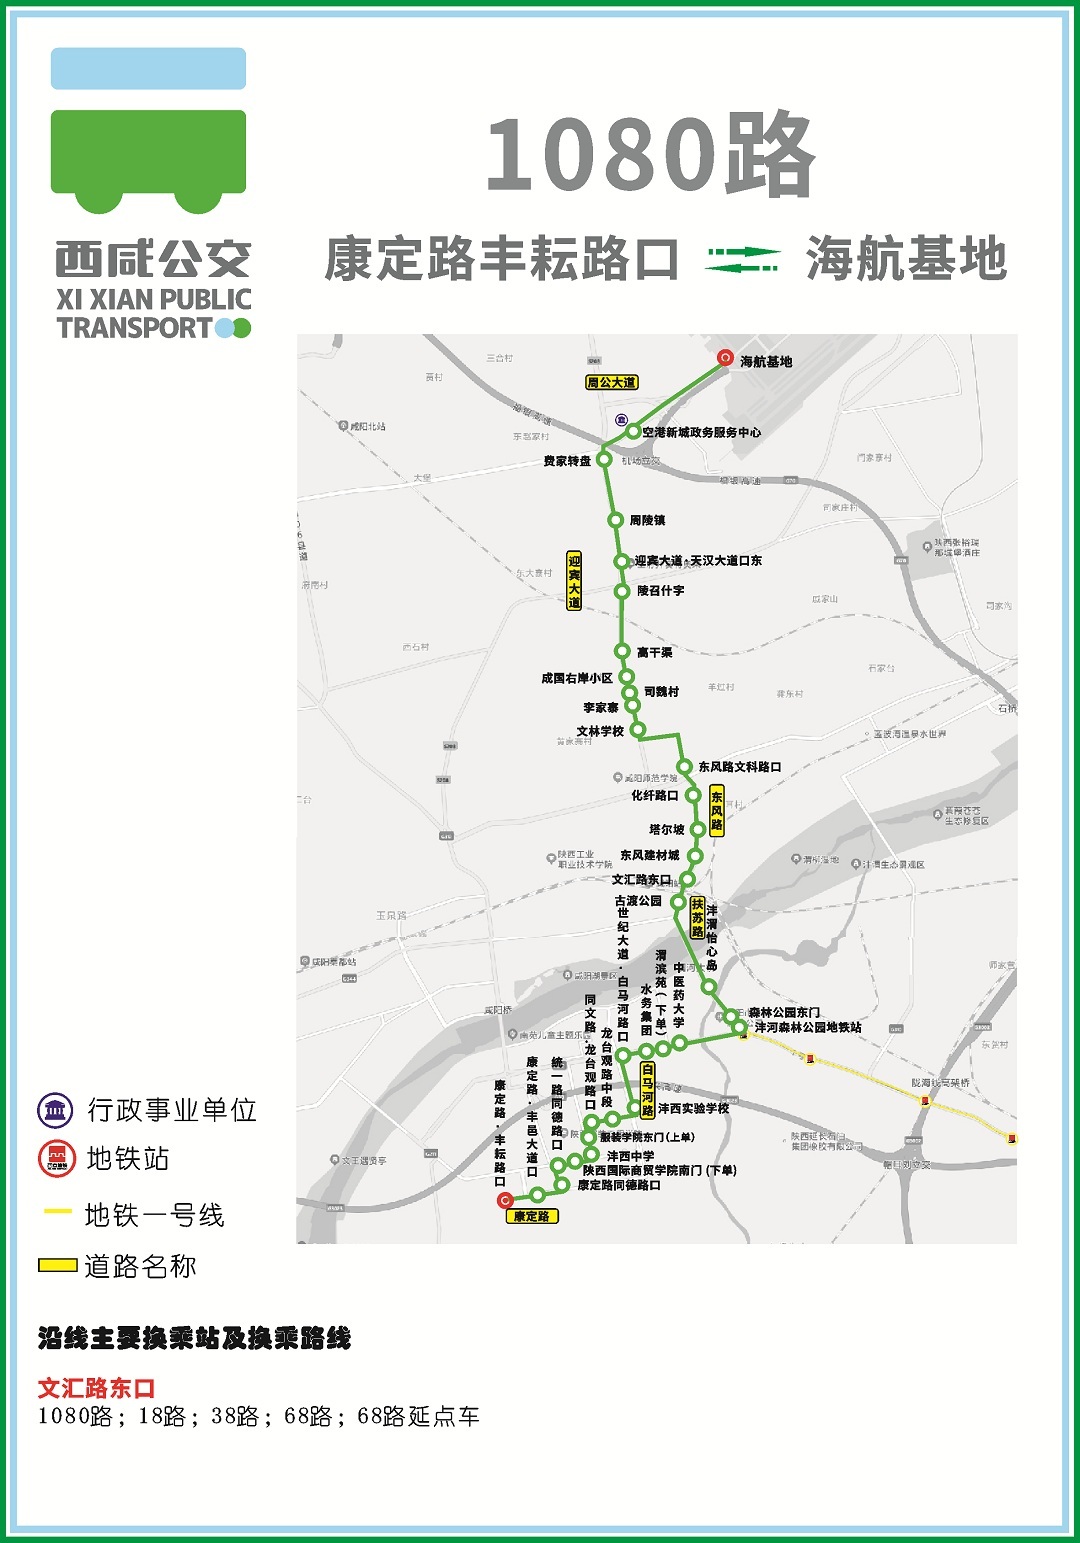 西咸881路公交车路线图图片